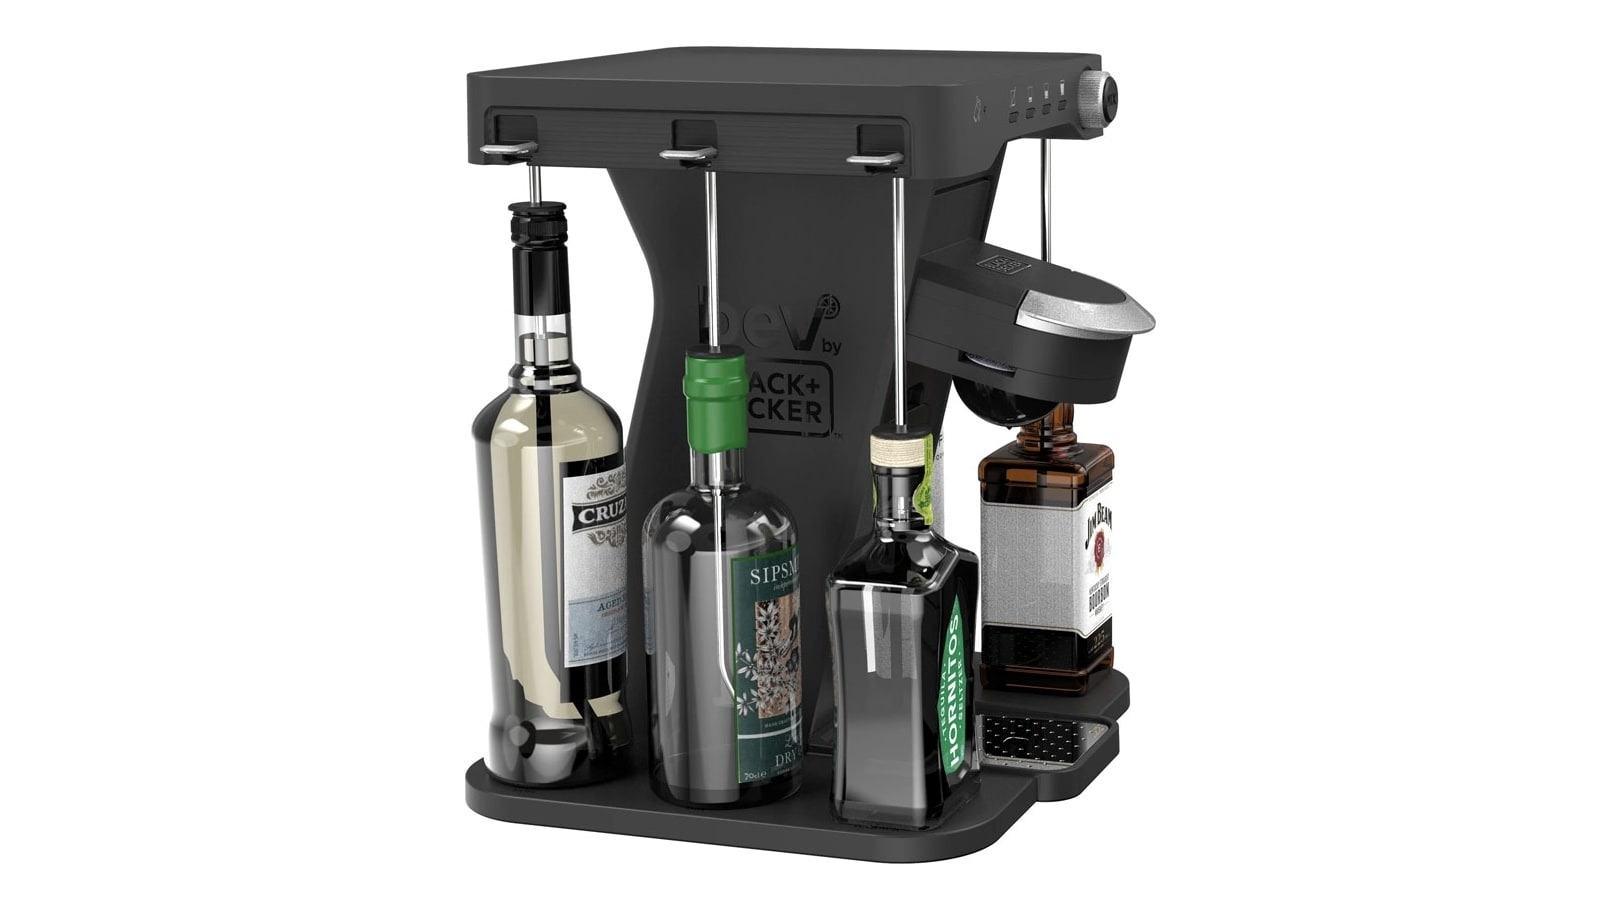 Black + Decker Bev Cocktail Maker uses easy pod system with adjustable Strengths